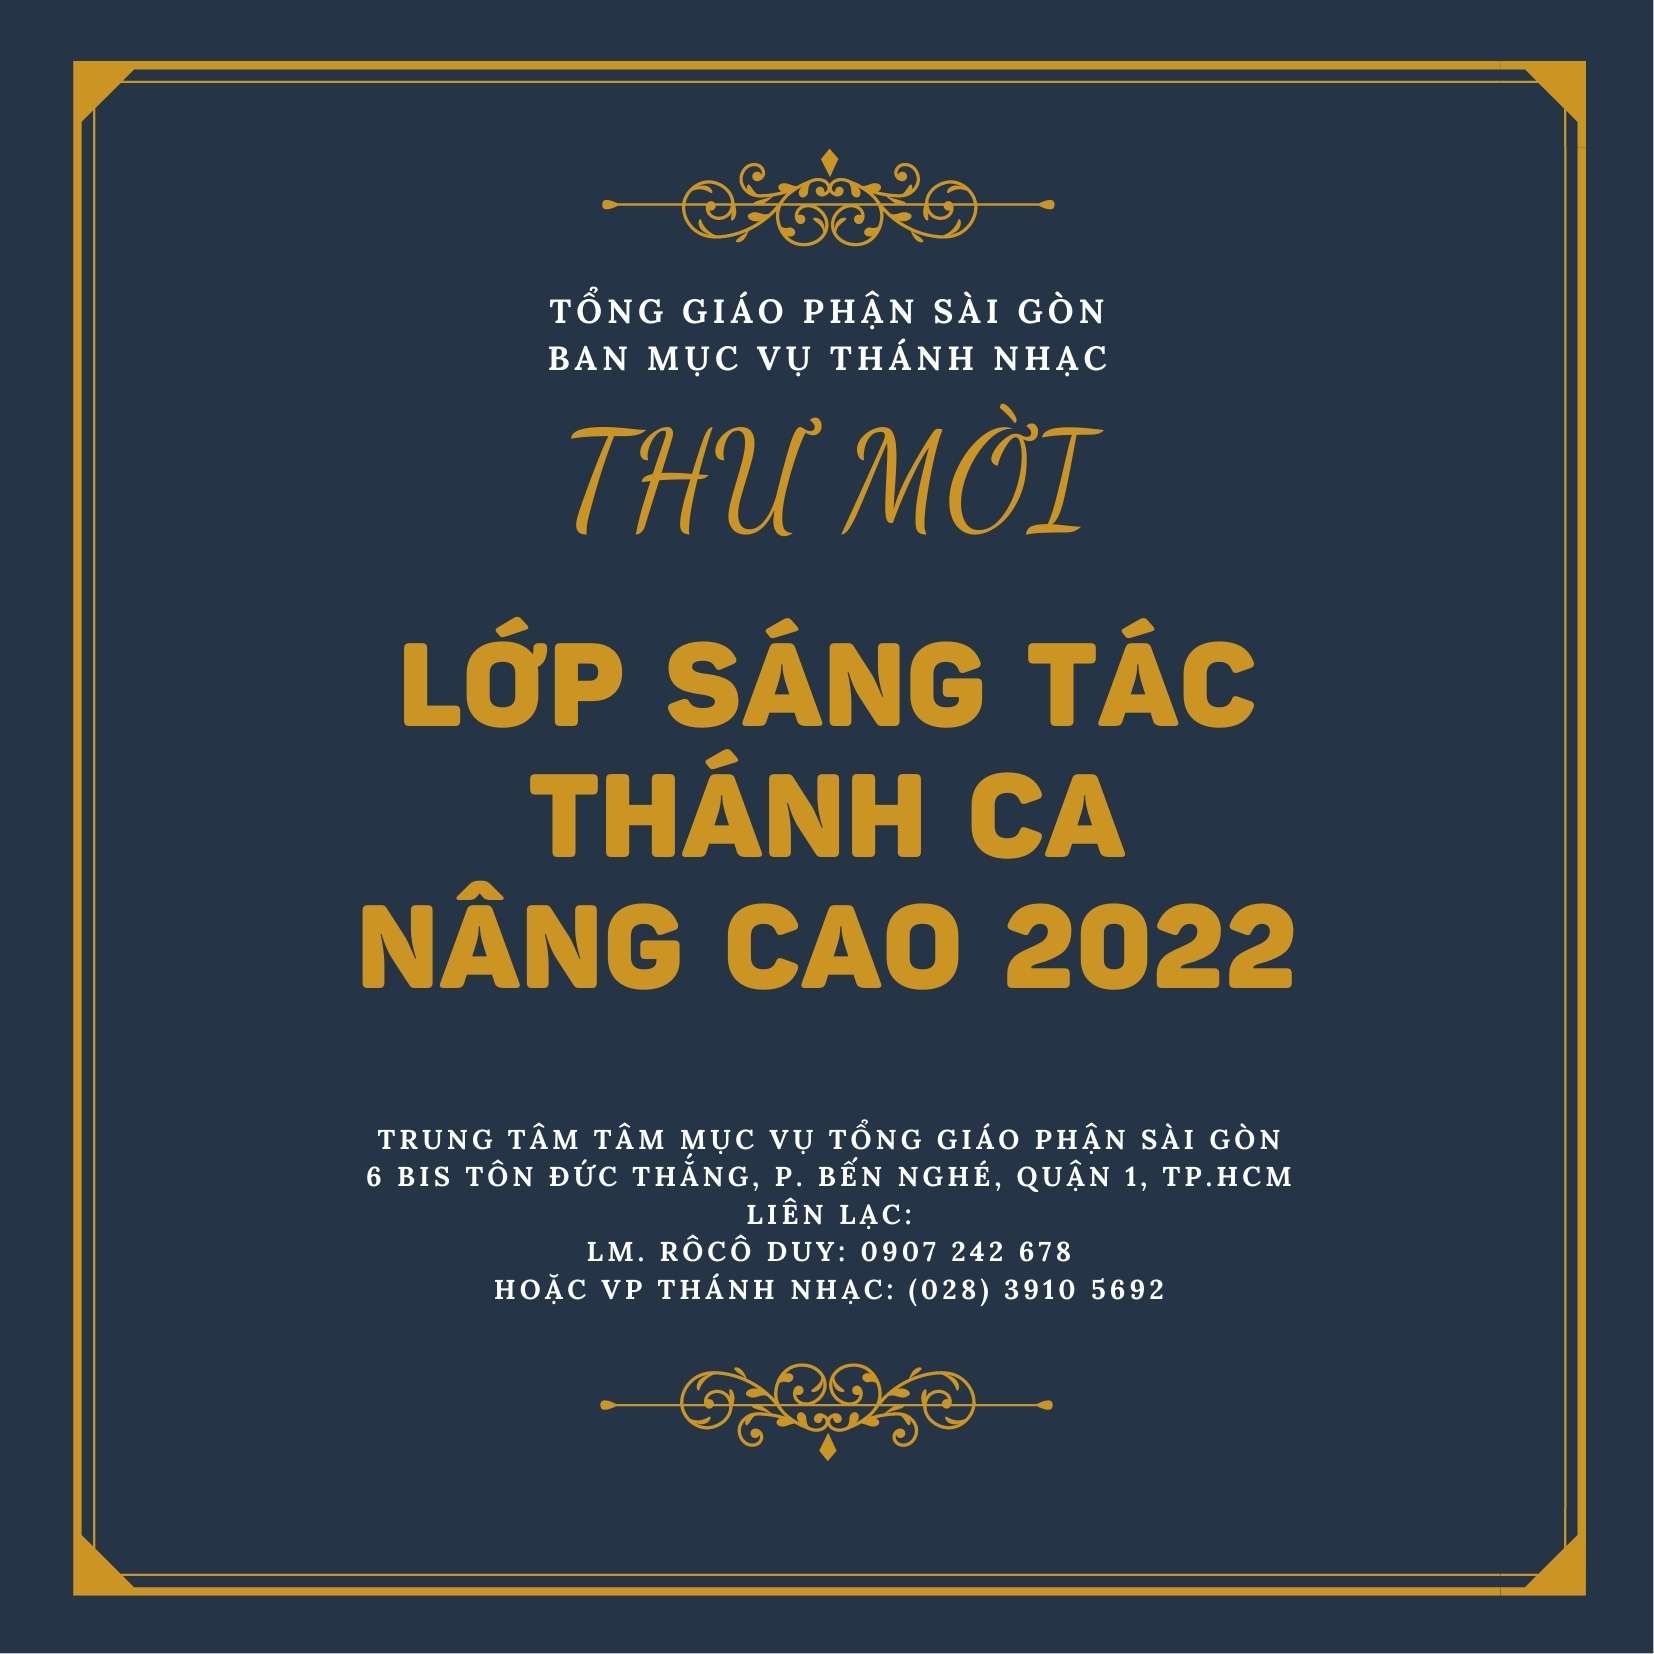 Ban Mục vụ Thánh nhạc TGP Sài Gòn: Lớp sáng tác Thánh ca nâng cao 2022